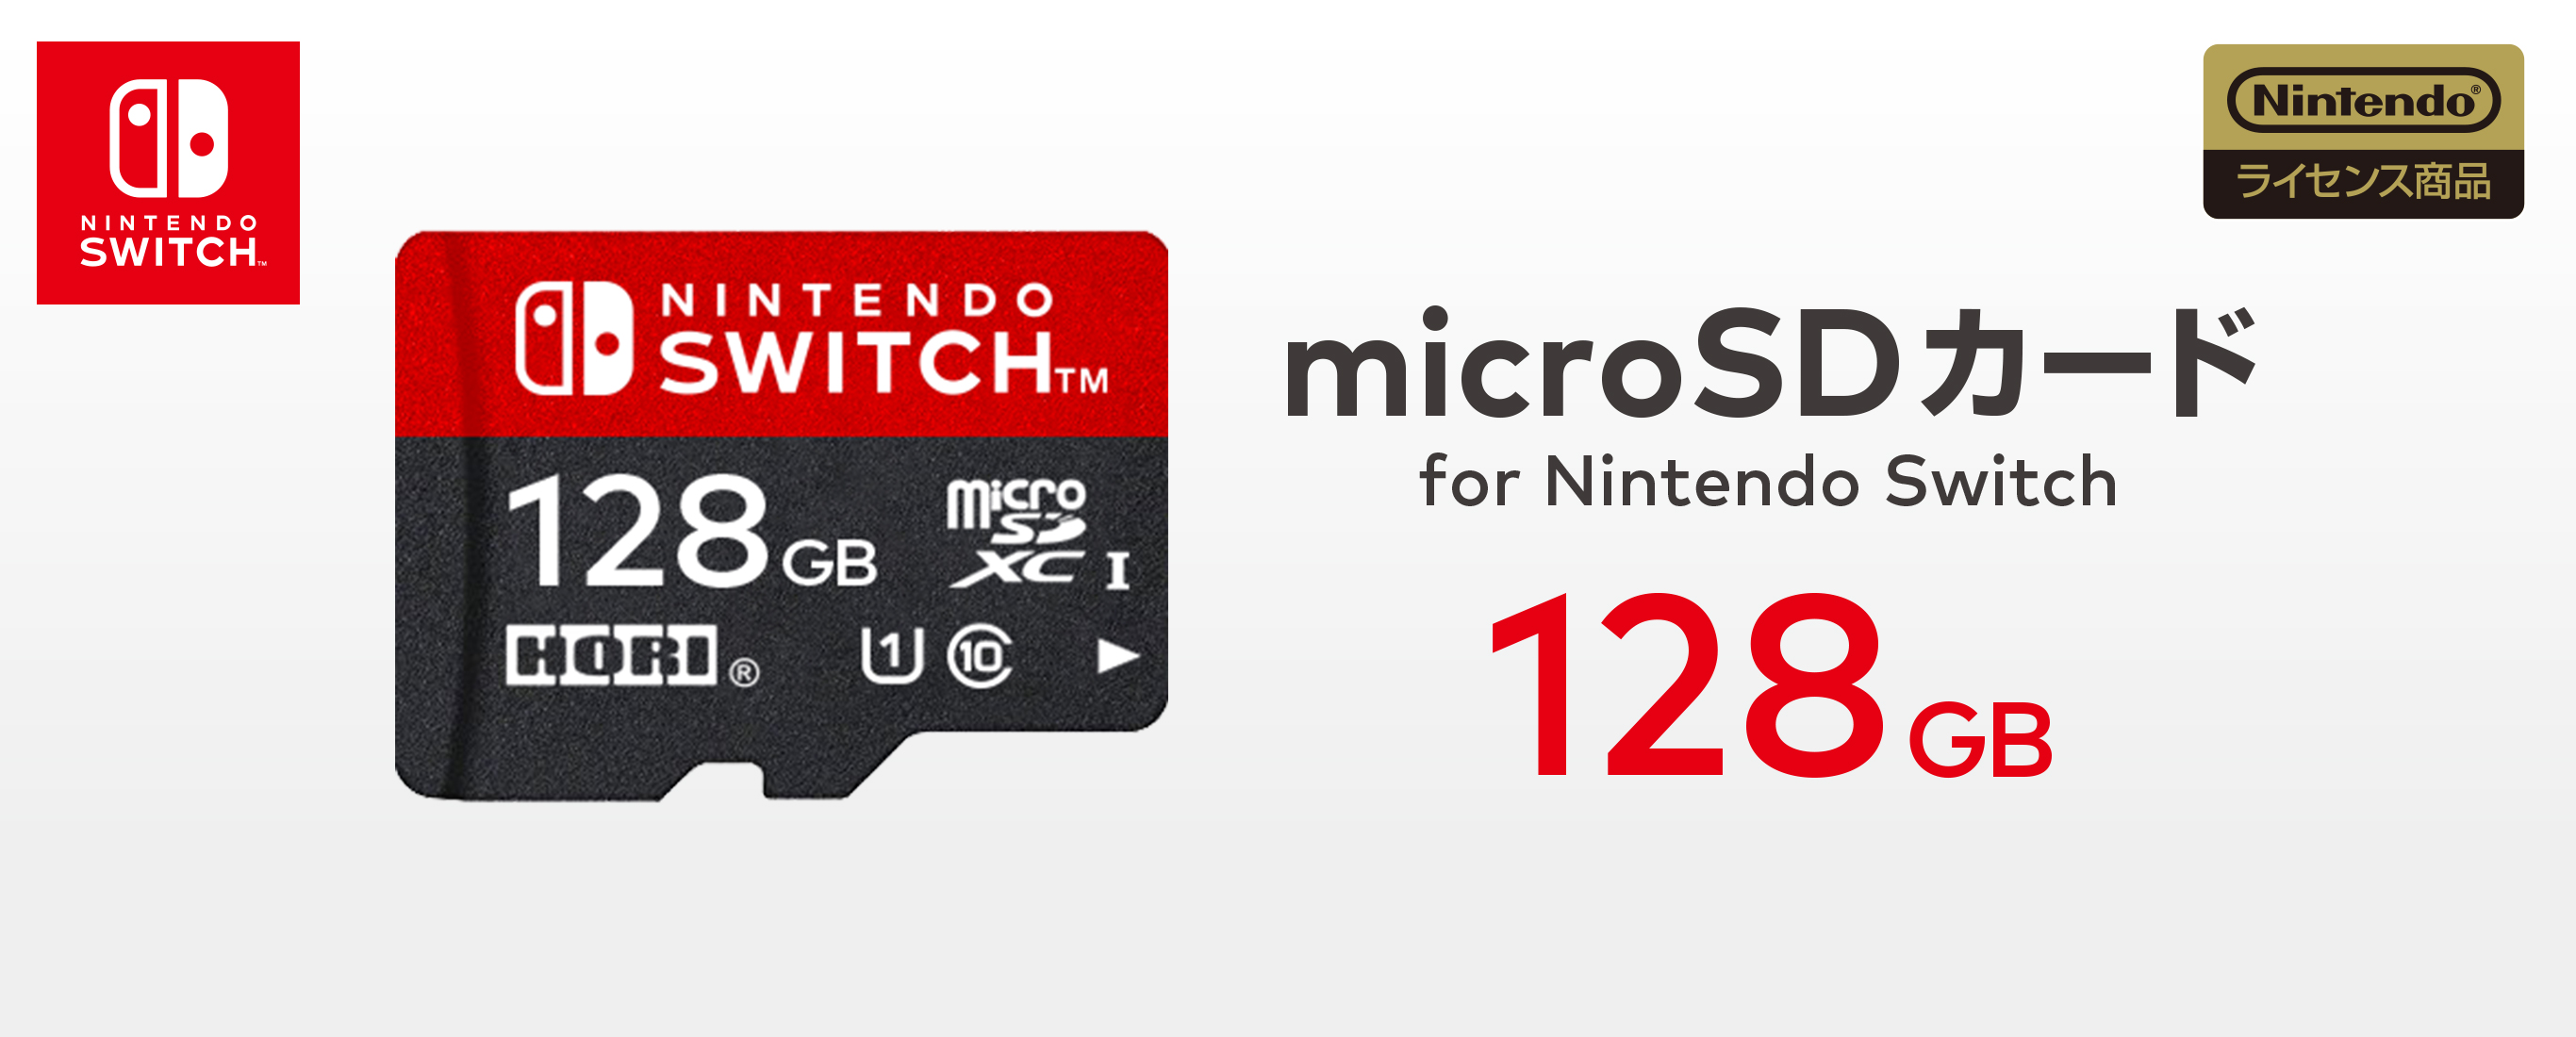 任天堂Switch Lite SDカード付き(128GB) - 家庭用ゲーム本体